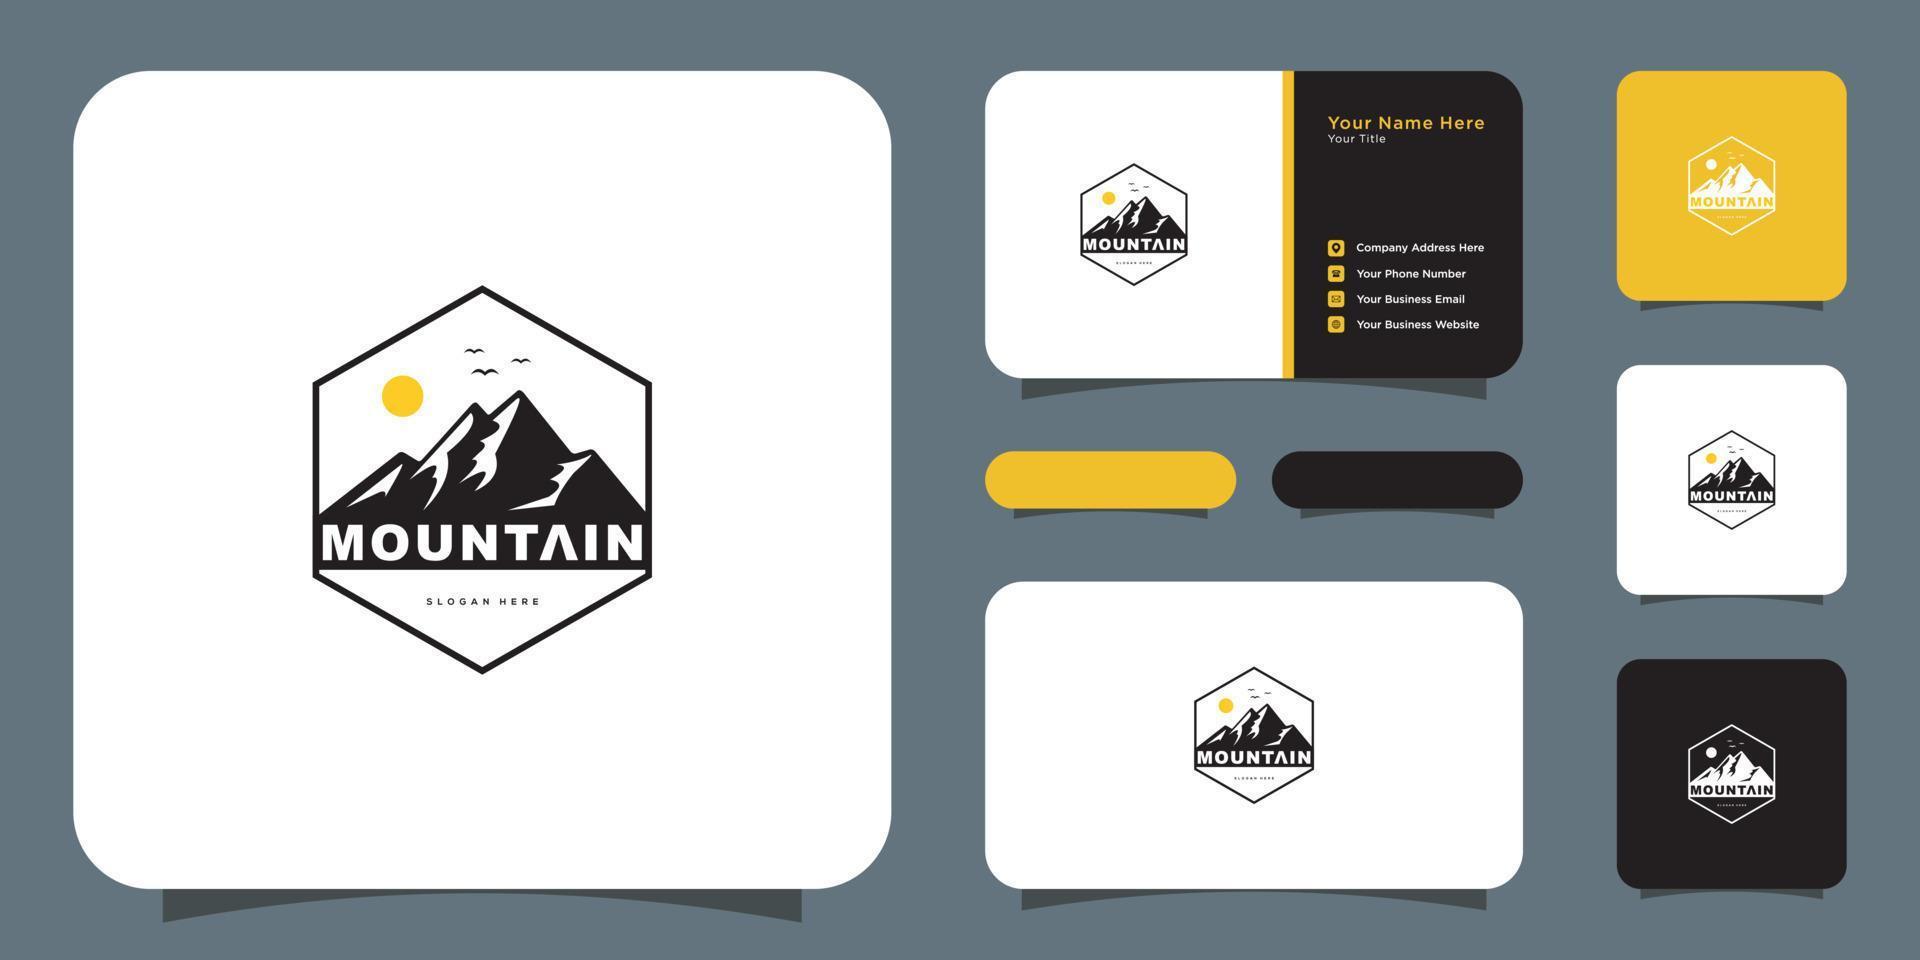 diseño de vector de logotipo de montaña y tarjeta de visita